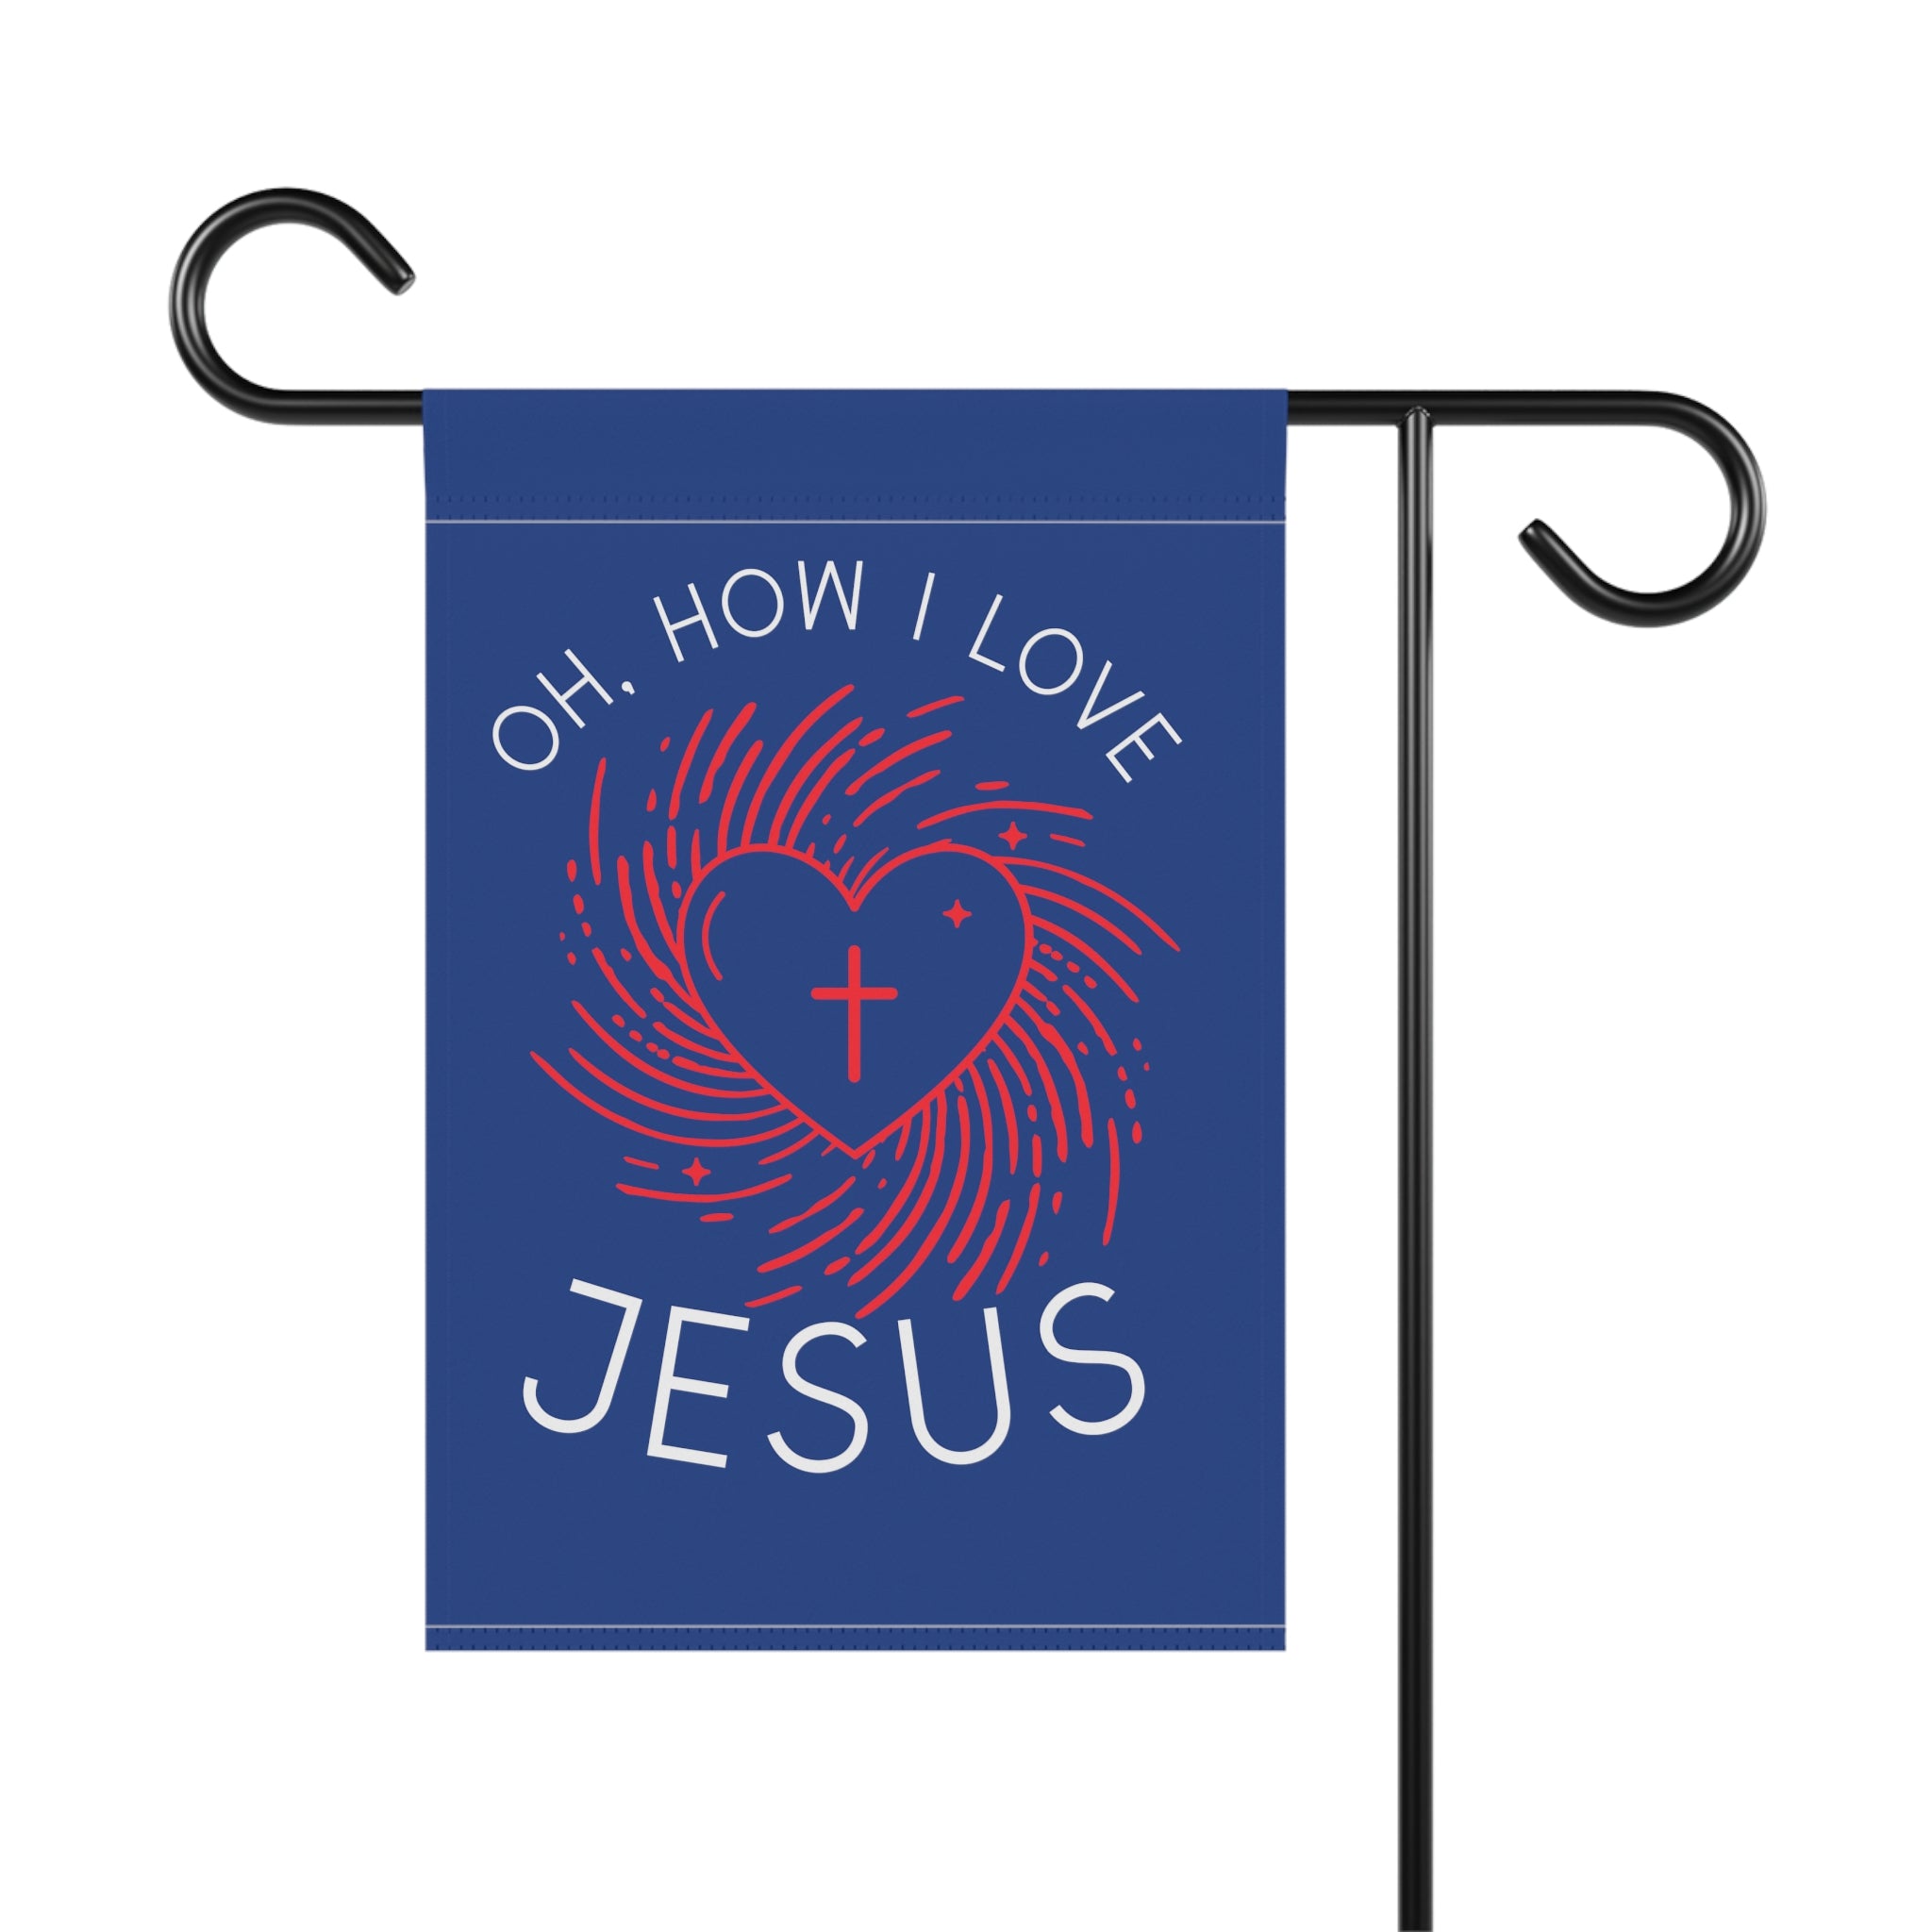 Oh how I love Jesus garden flag